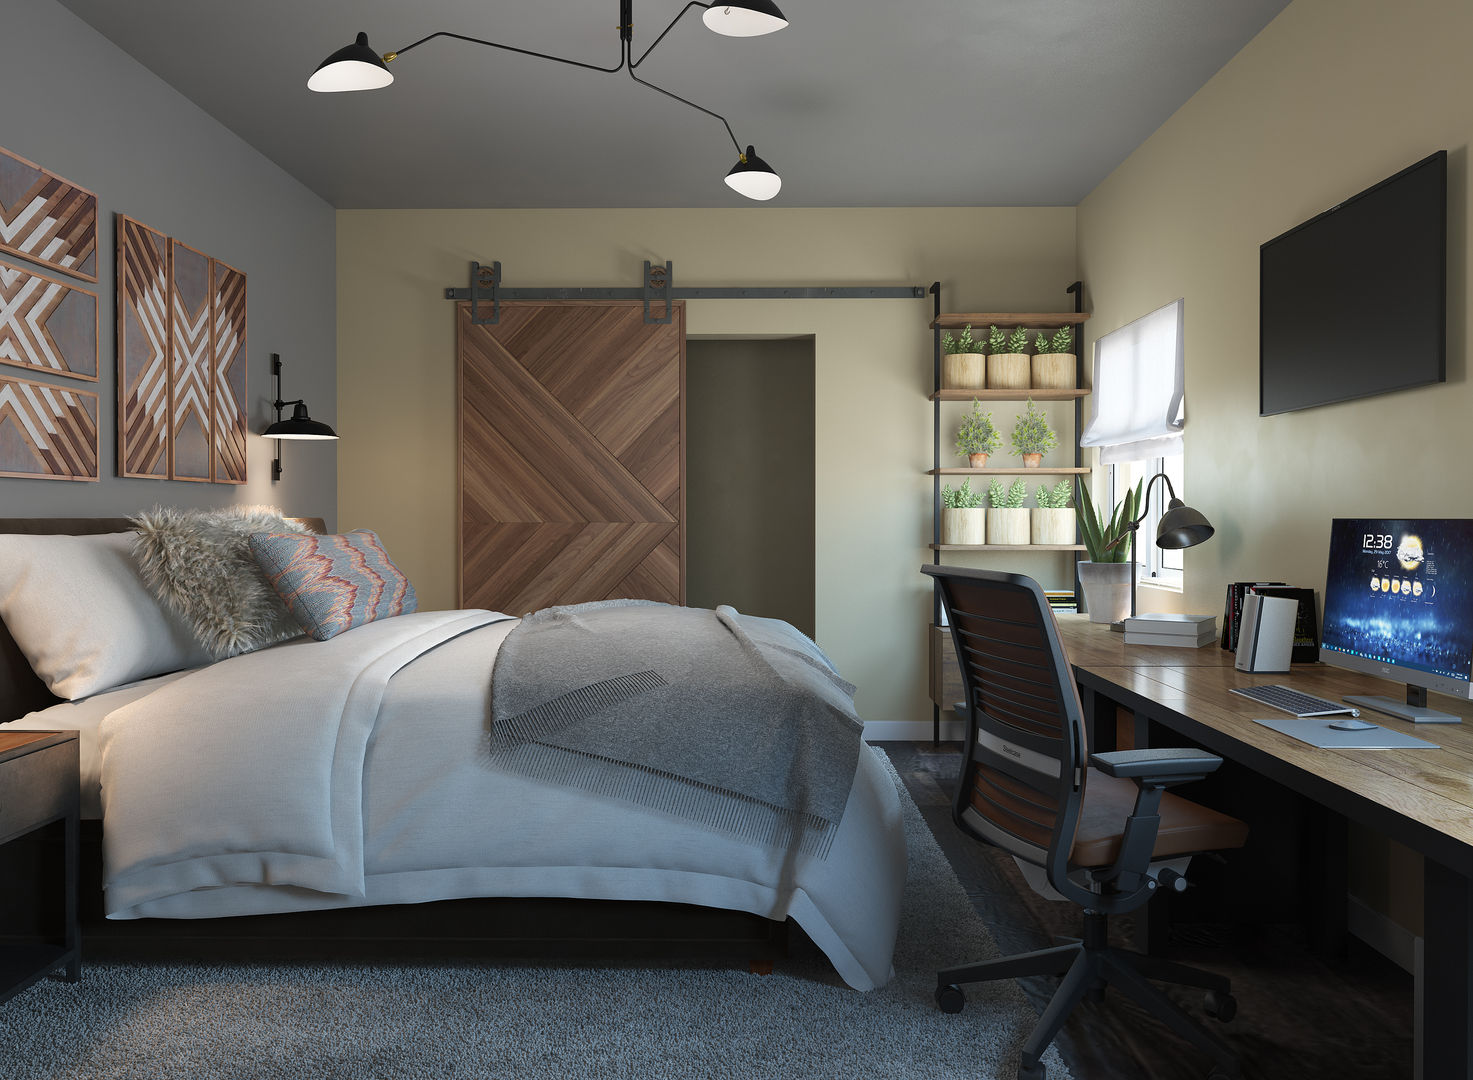 Dormitorio con zona de estudio/trabajo, Glancing EYE - Modelado y diseño 3D Glancing EYE - Modelado y diseño 3D Bedroom